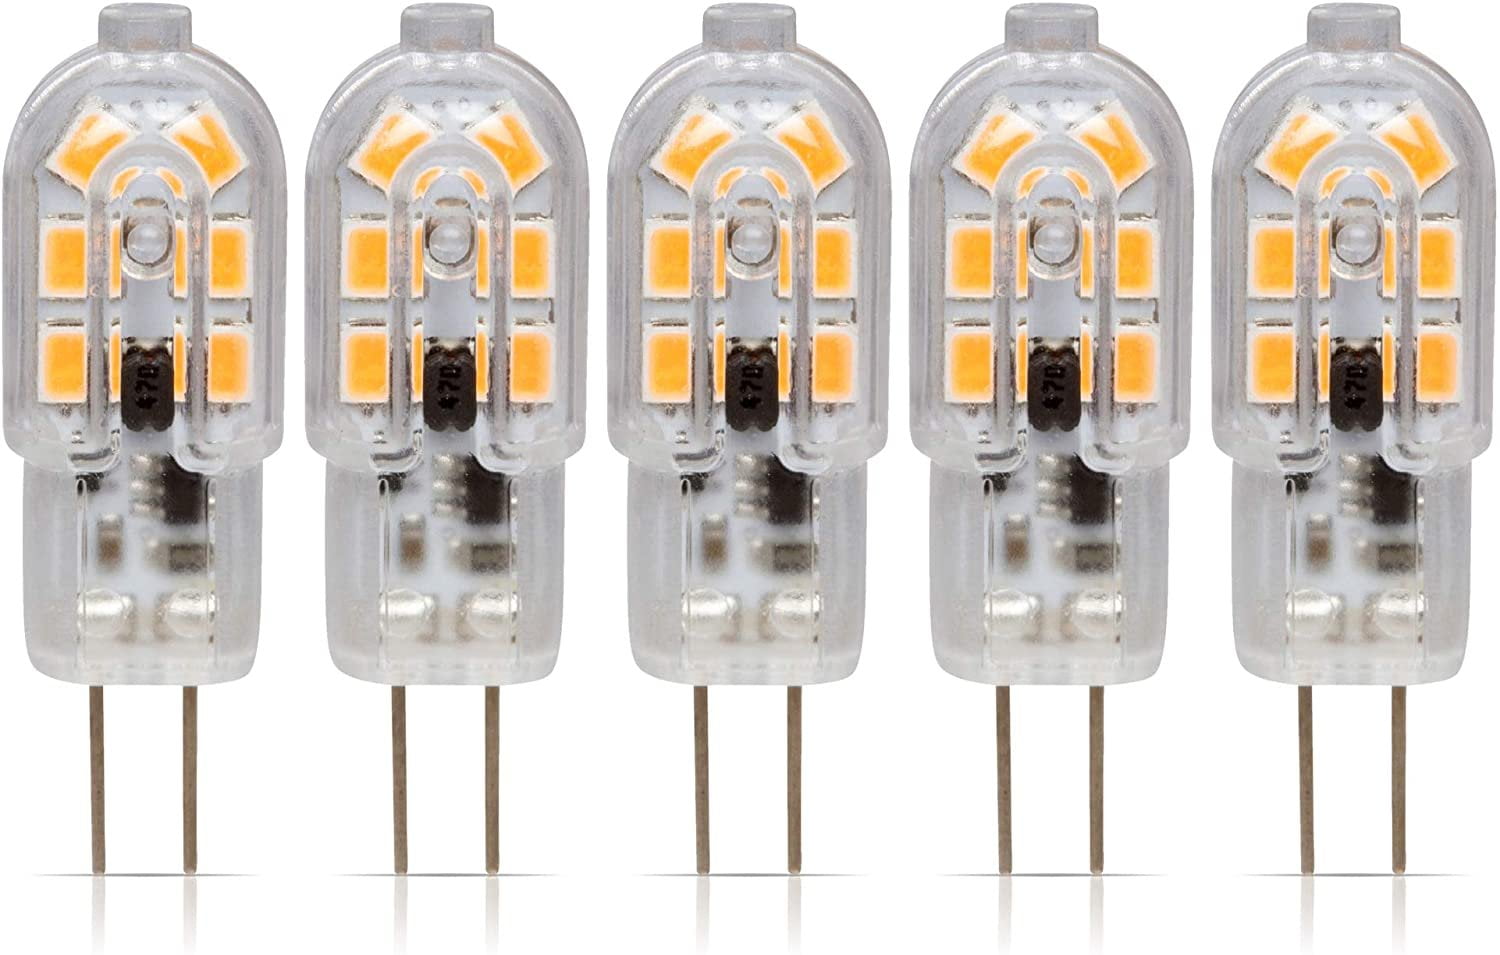 DOPKUSS G4 LED Bulbs 12V Led Light AC/DC Bi-Pin Base Landscape Light Bulbs  3 Watt 12v Light Bulb - G4 Bulb LED Lighting Equiavlent to 30W Low Voltage